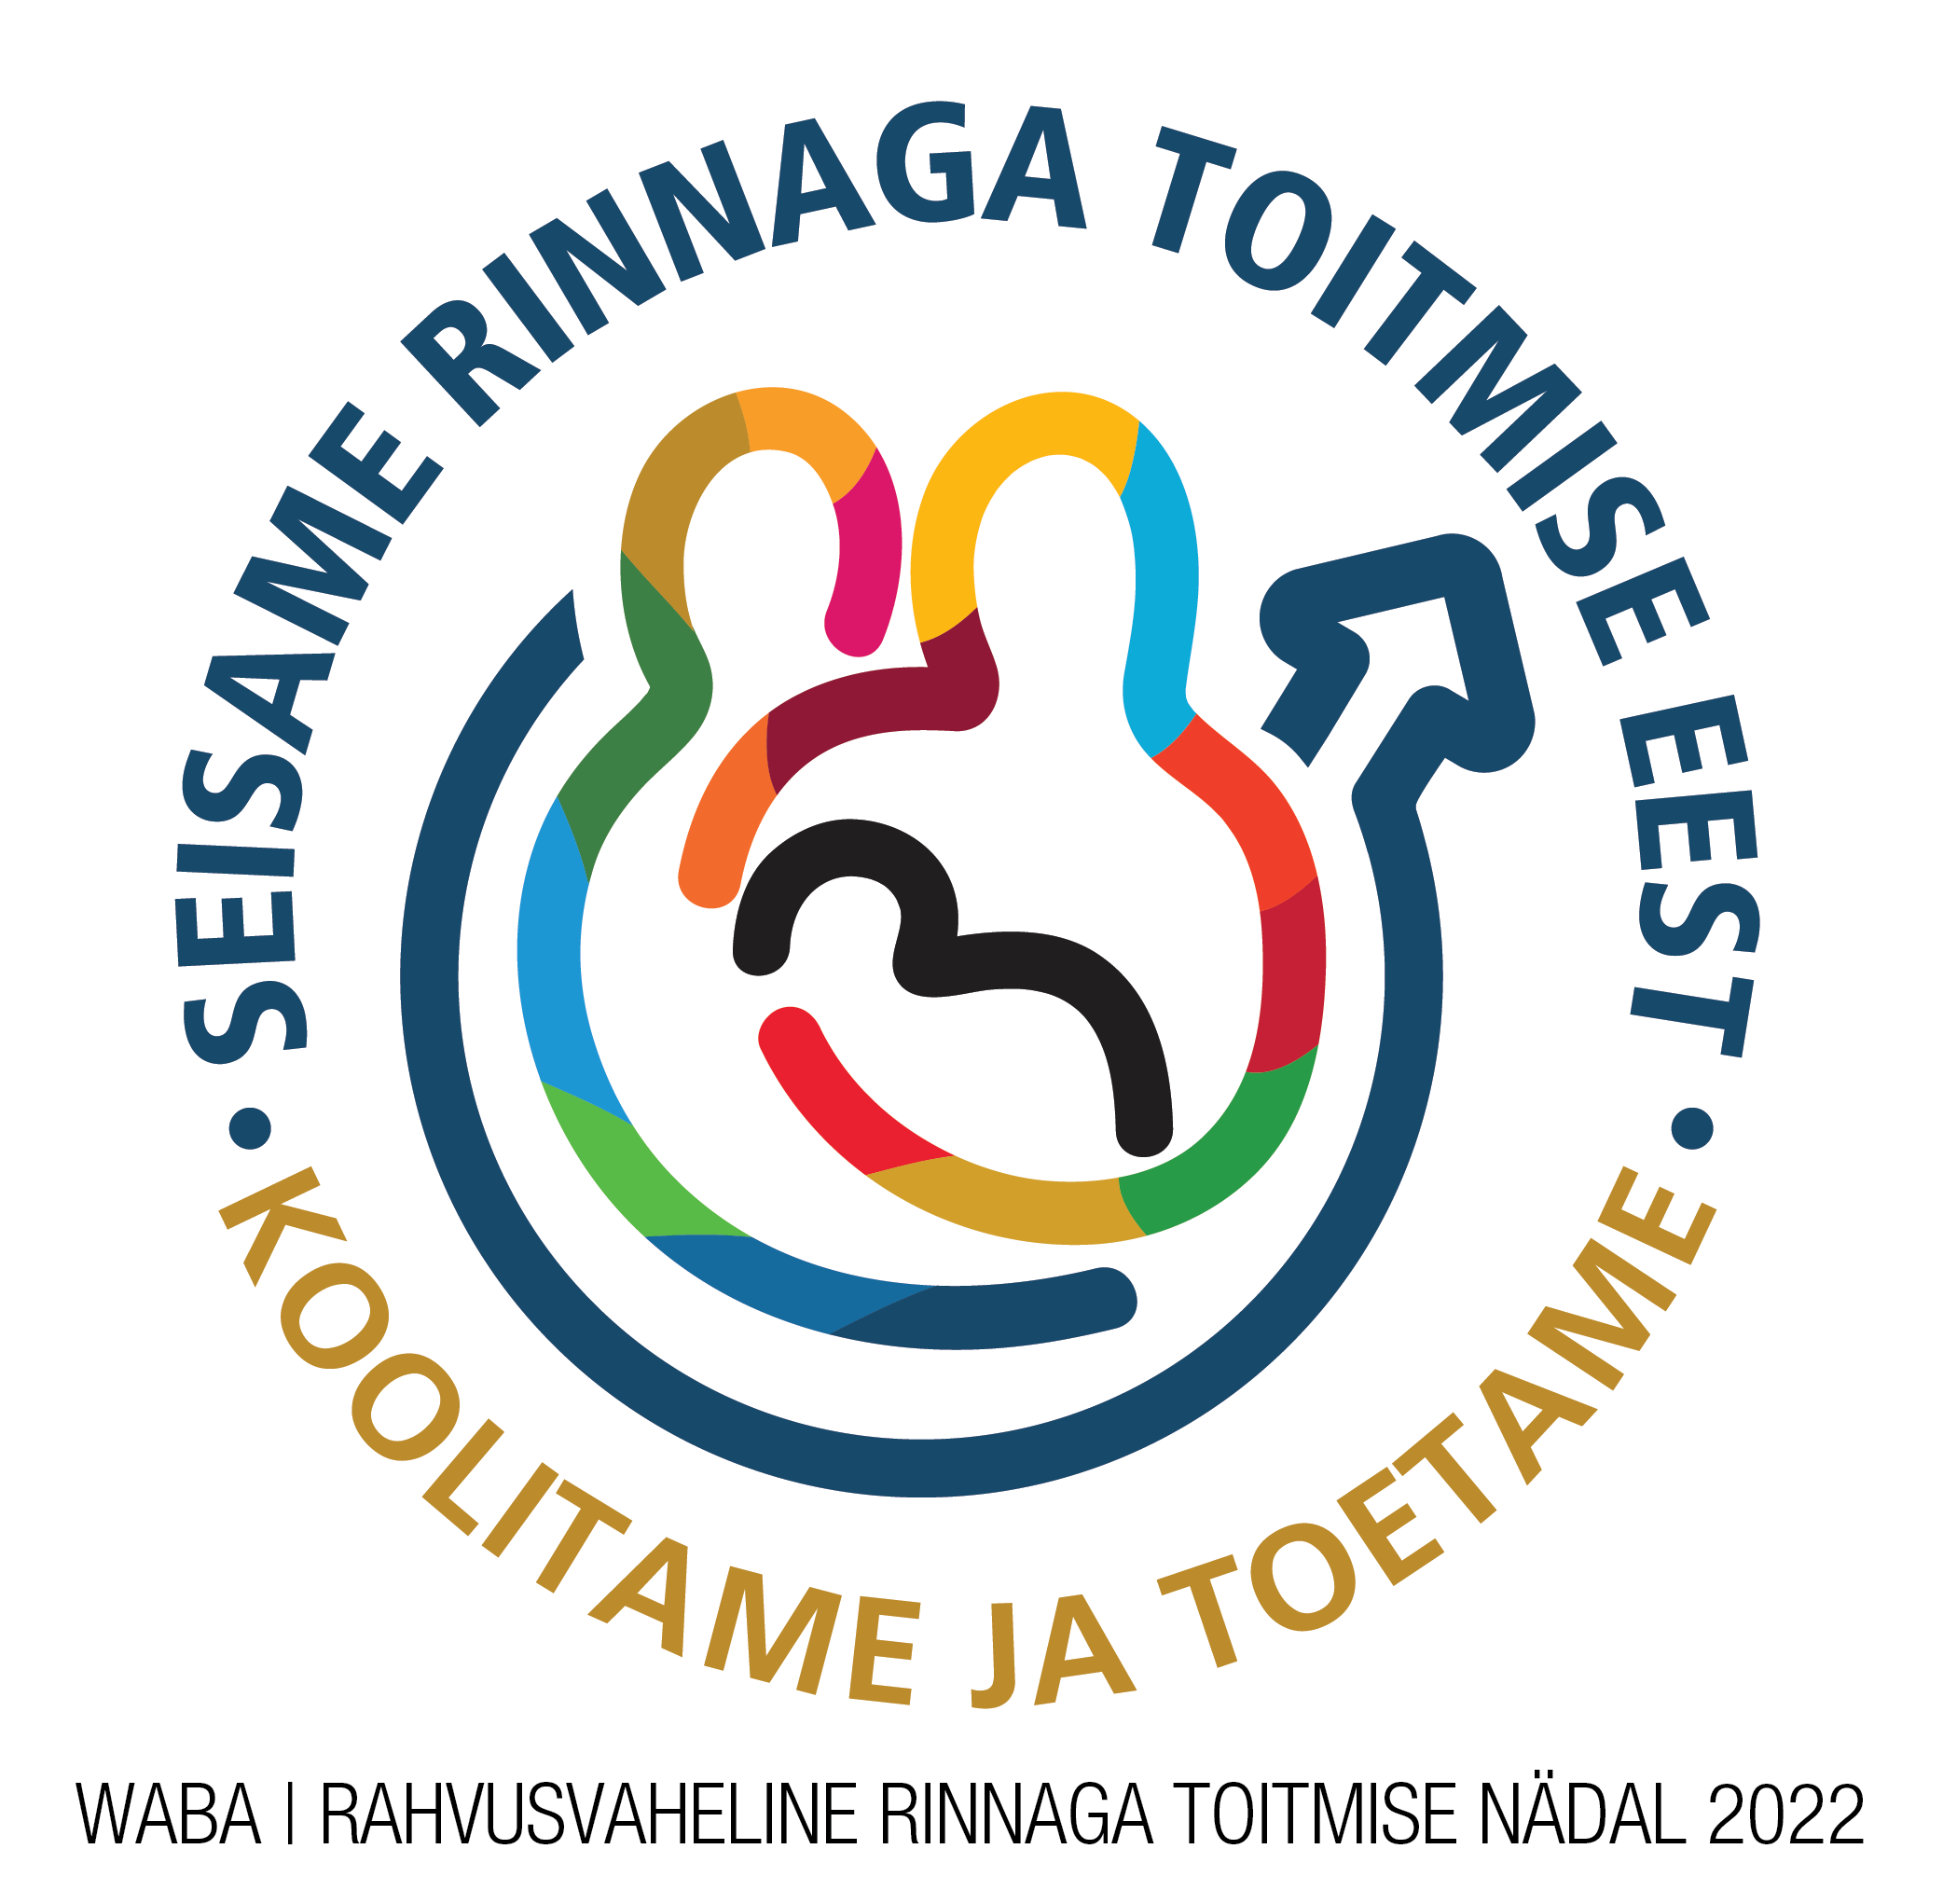 Tallinna Tervishoiu Kõrgkool kutsub osalema loengutes rinnaga toitmise teemal 1.-4. augustil